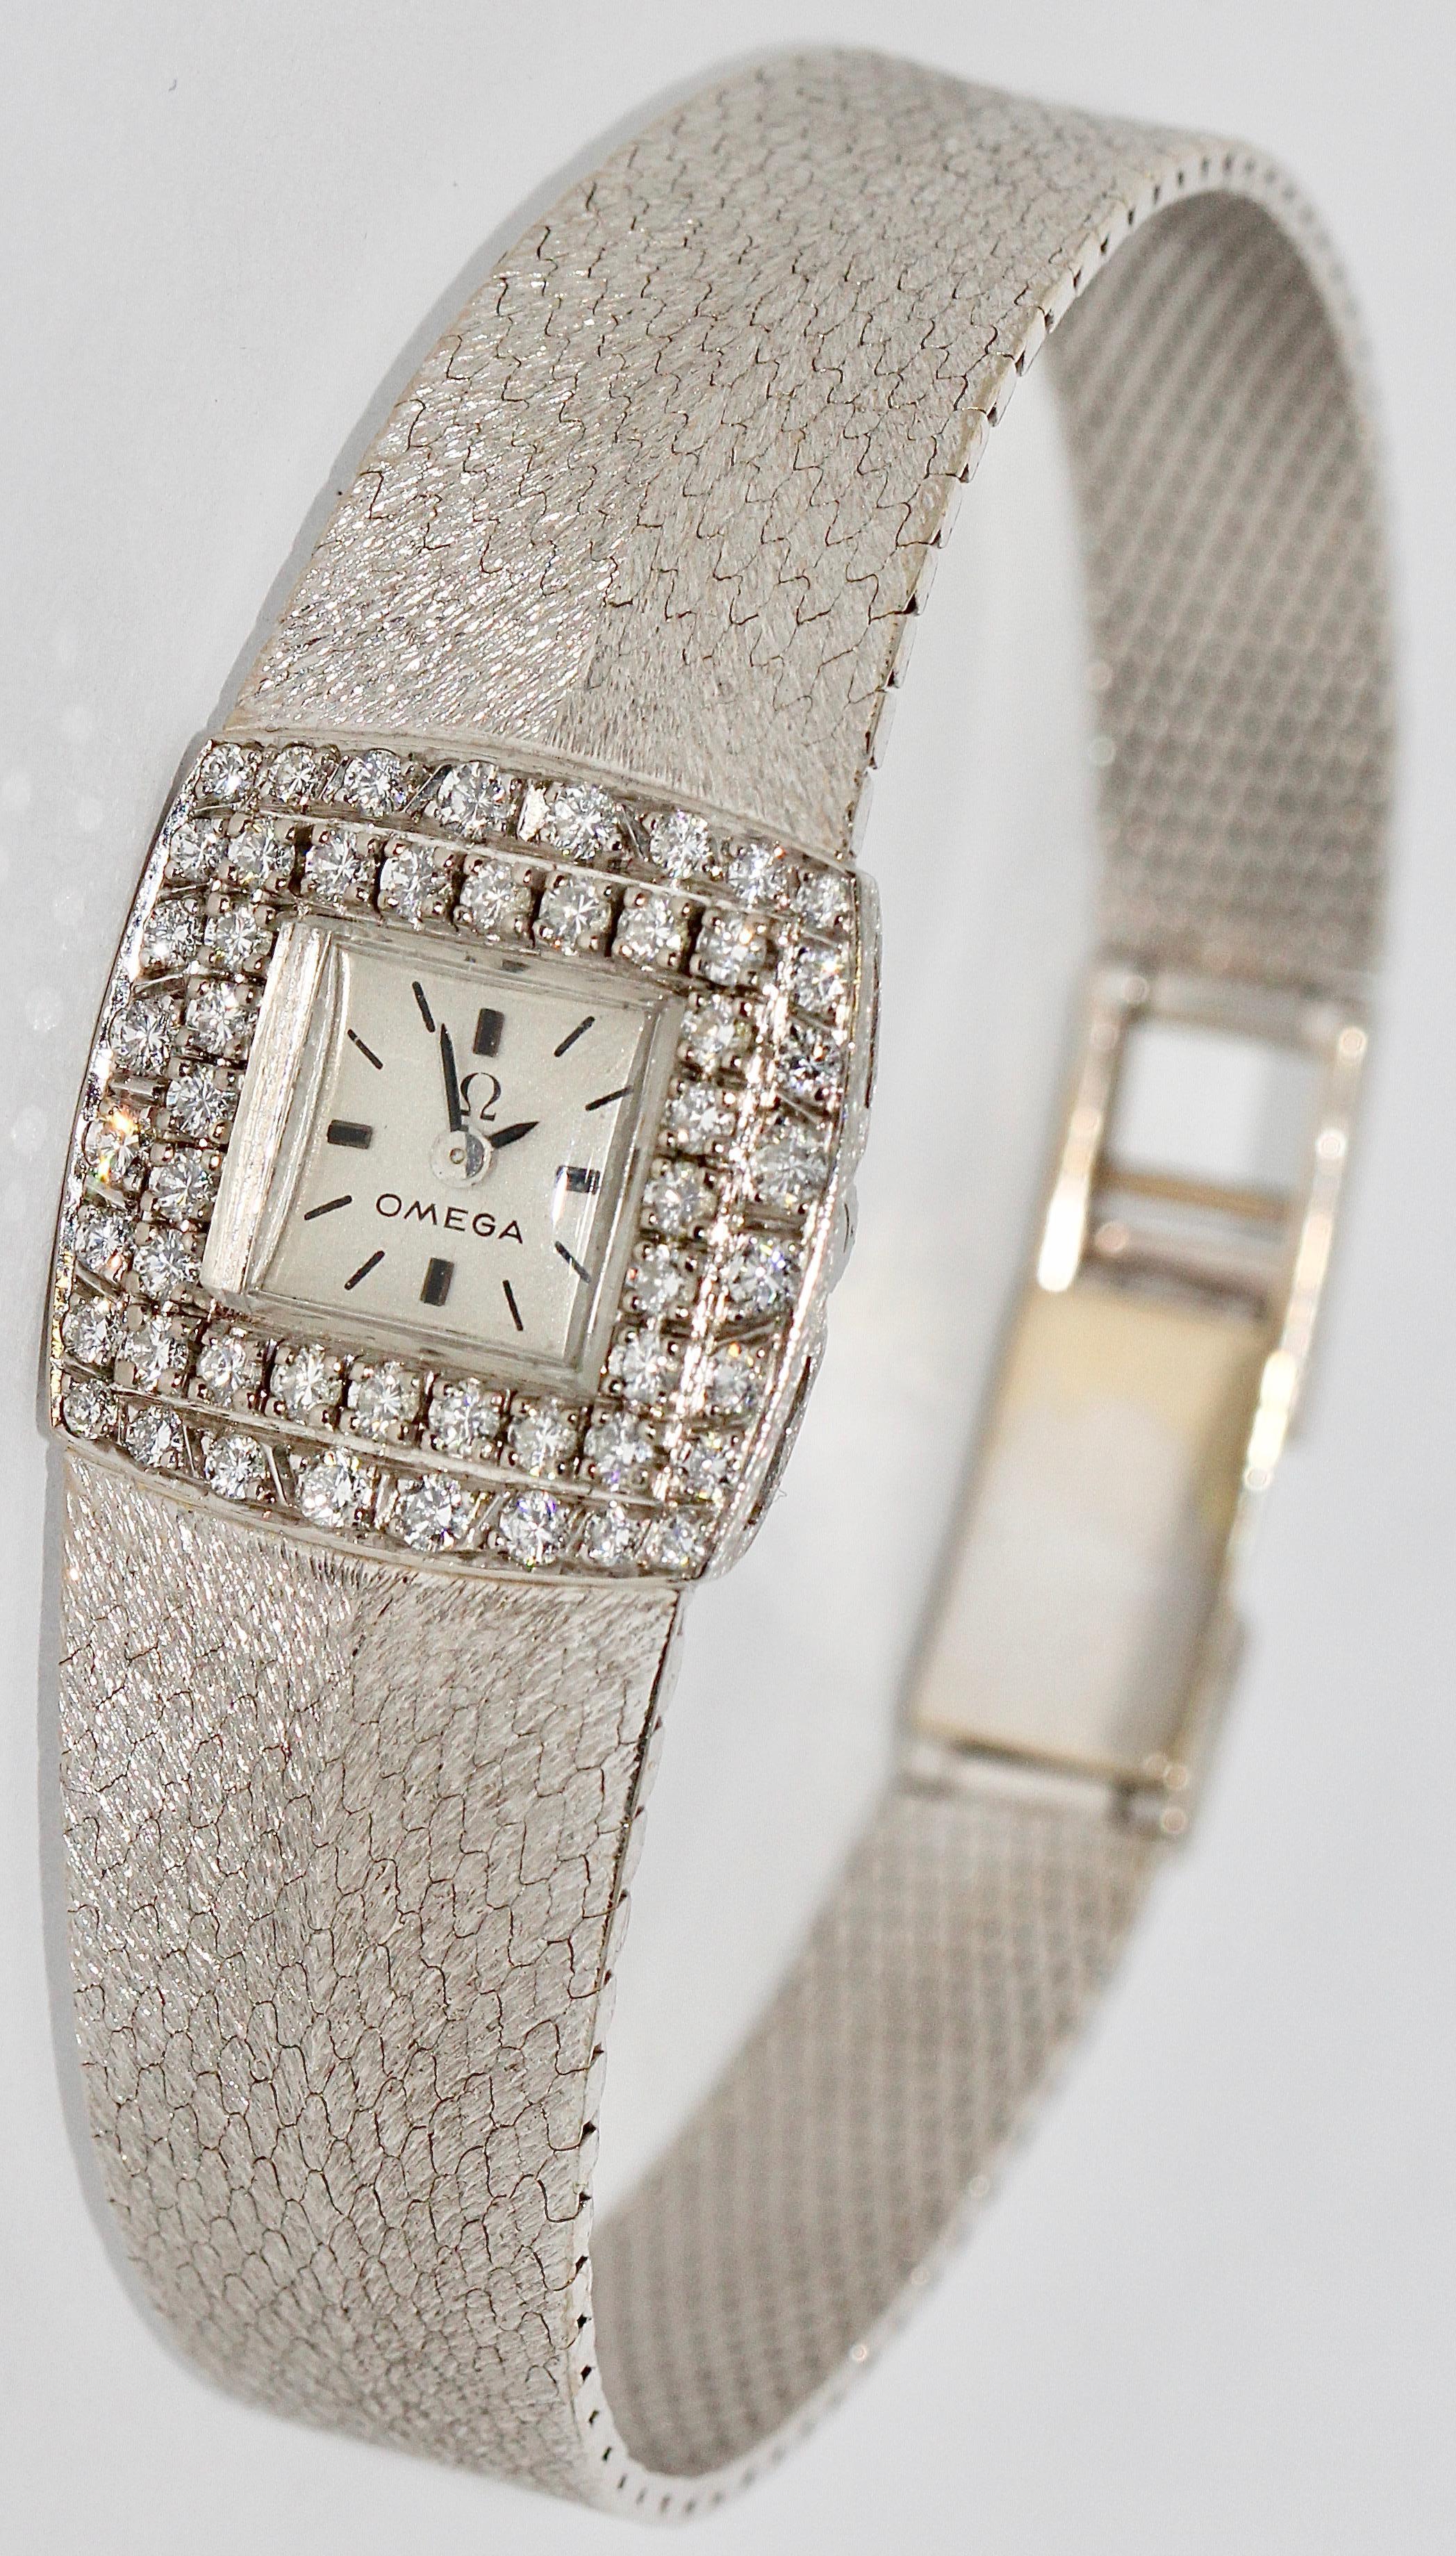 Omega Damen-Armbanduhr, 18 Karat Weißgold, mit Diamanten.

Mechanisches Uhrwerk (Handaufzug).
Sehr guter Zustand.

Sehr seltenes Modell.

Mit Echtheitszertifikat.